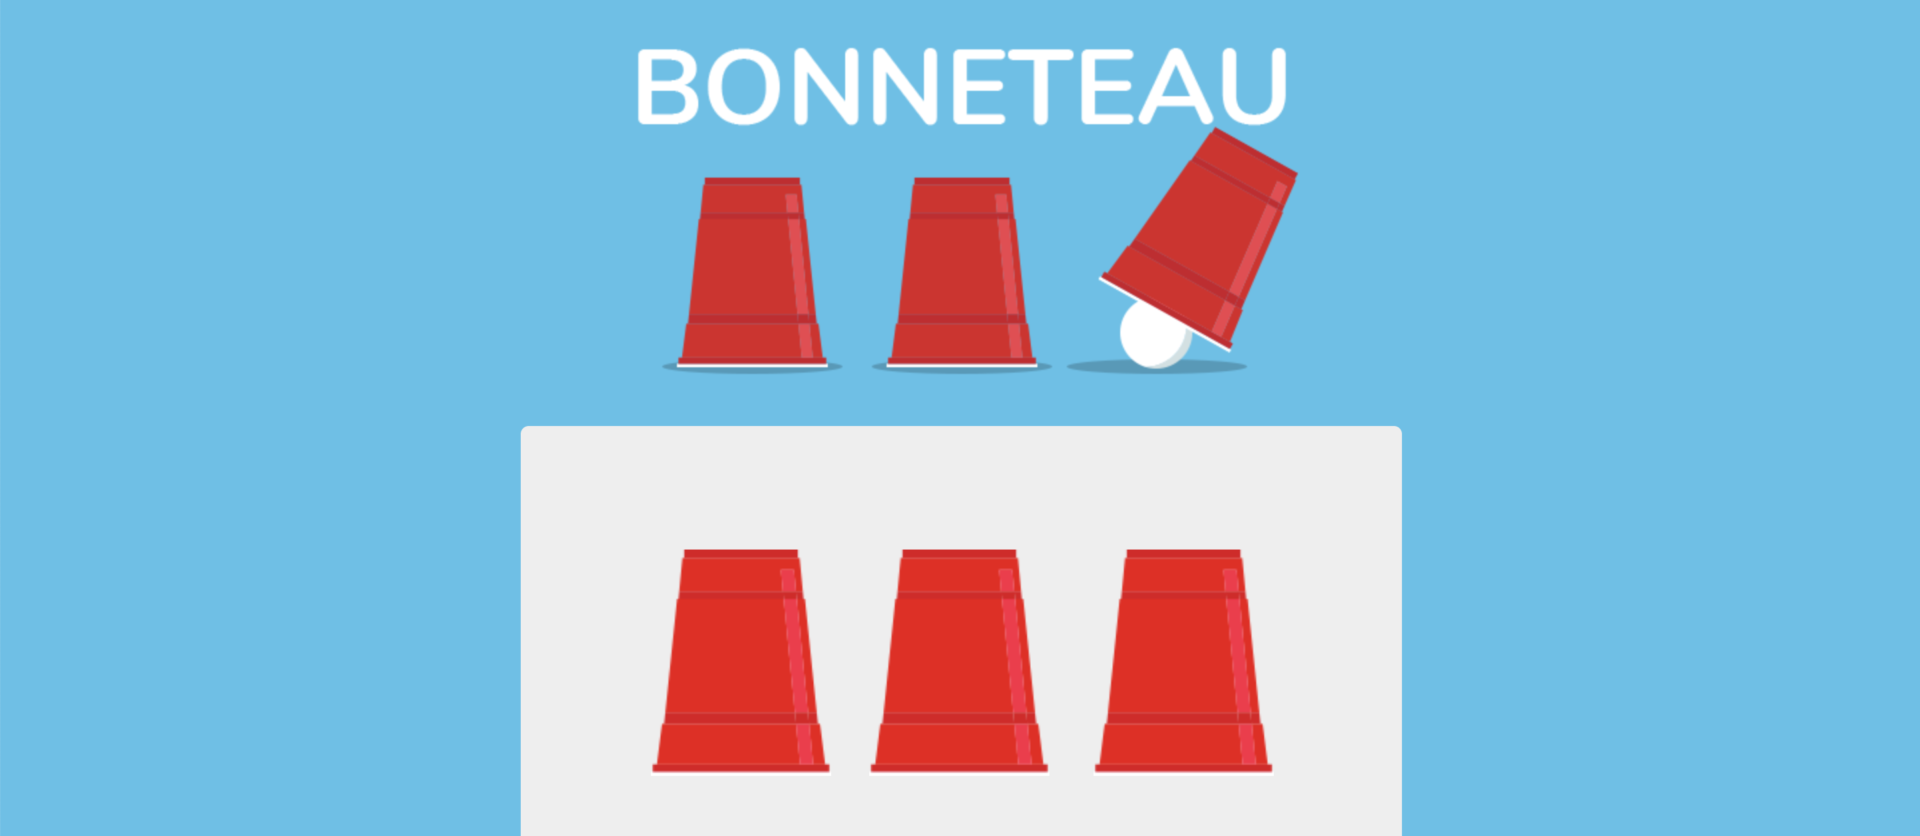 Exemple jeu concours Bonneteau